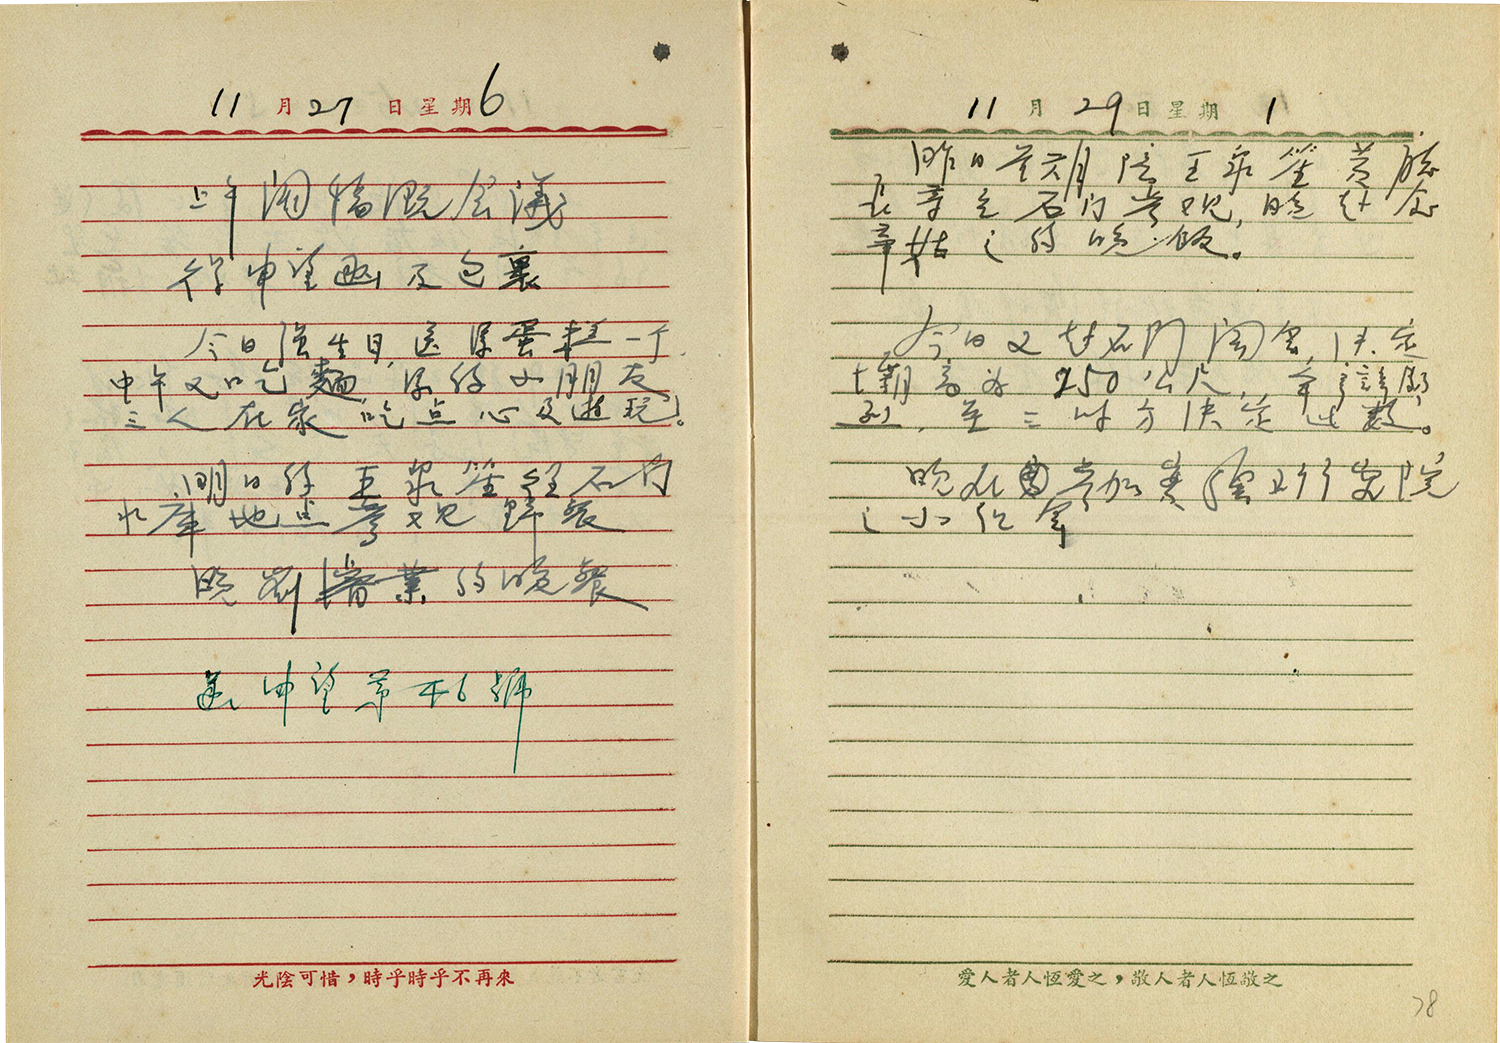 1954 年 11 月 29 日劉永楙在日記中寫到：「今日又赴石門開會，決定壩高為 250 公尺，爭辯劇烈，至三時方決定此數。」 圖｜中央研究院臺灣史研究所